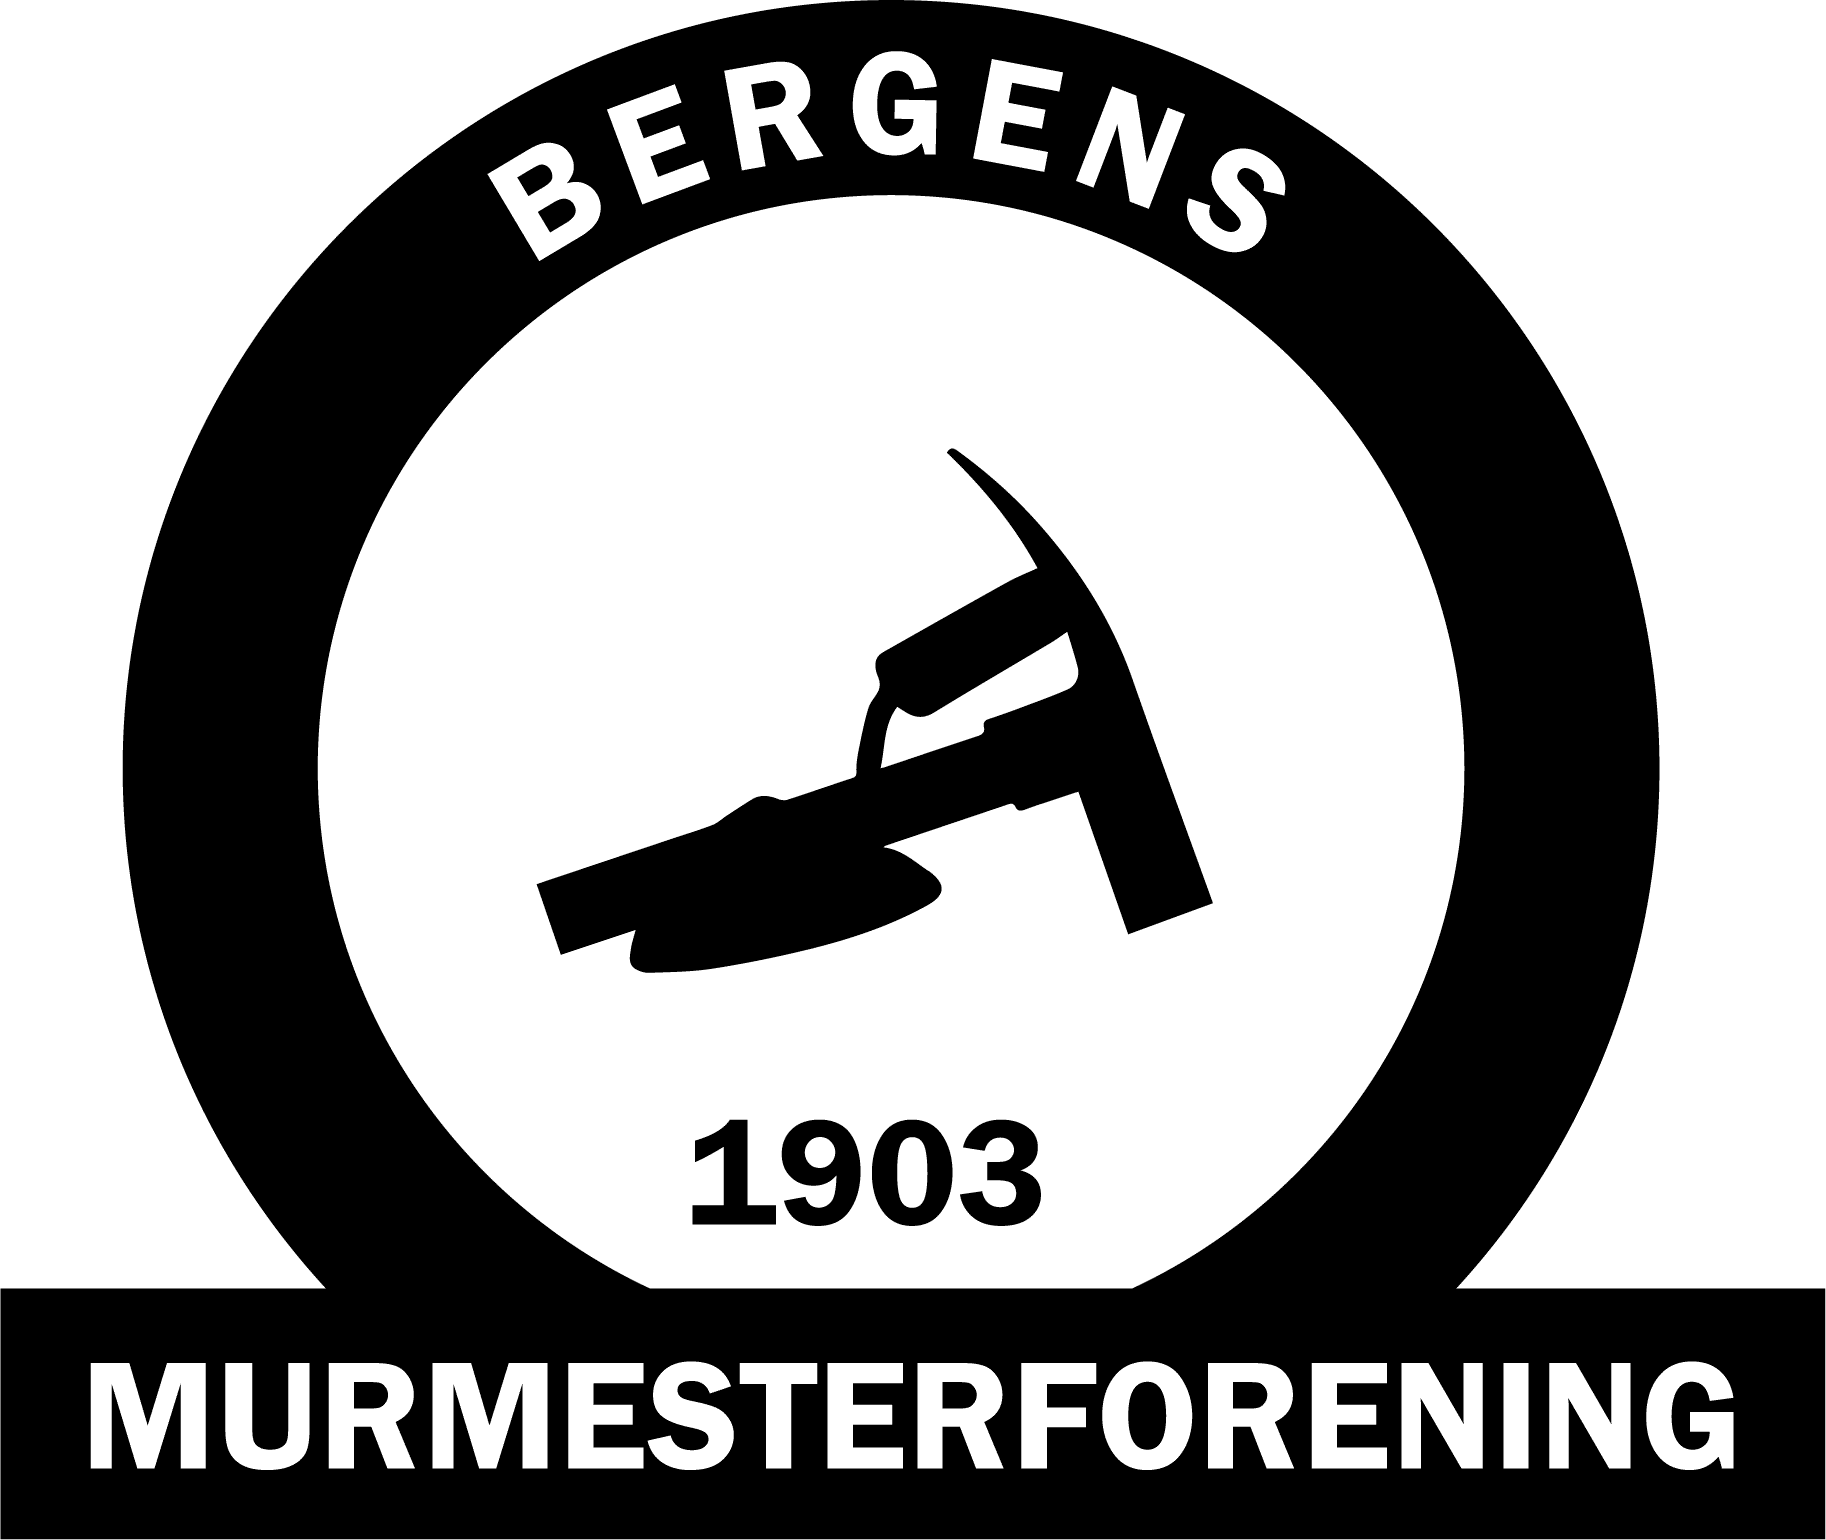 Bergens Murmesterforening logo